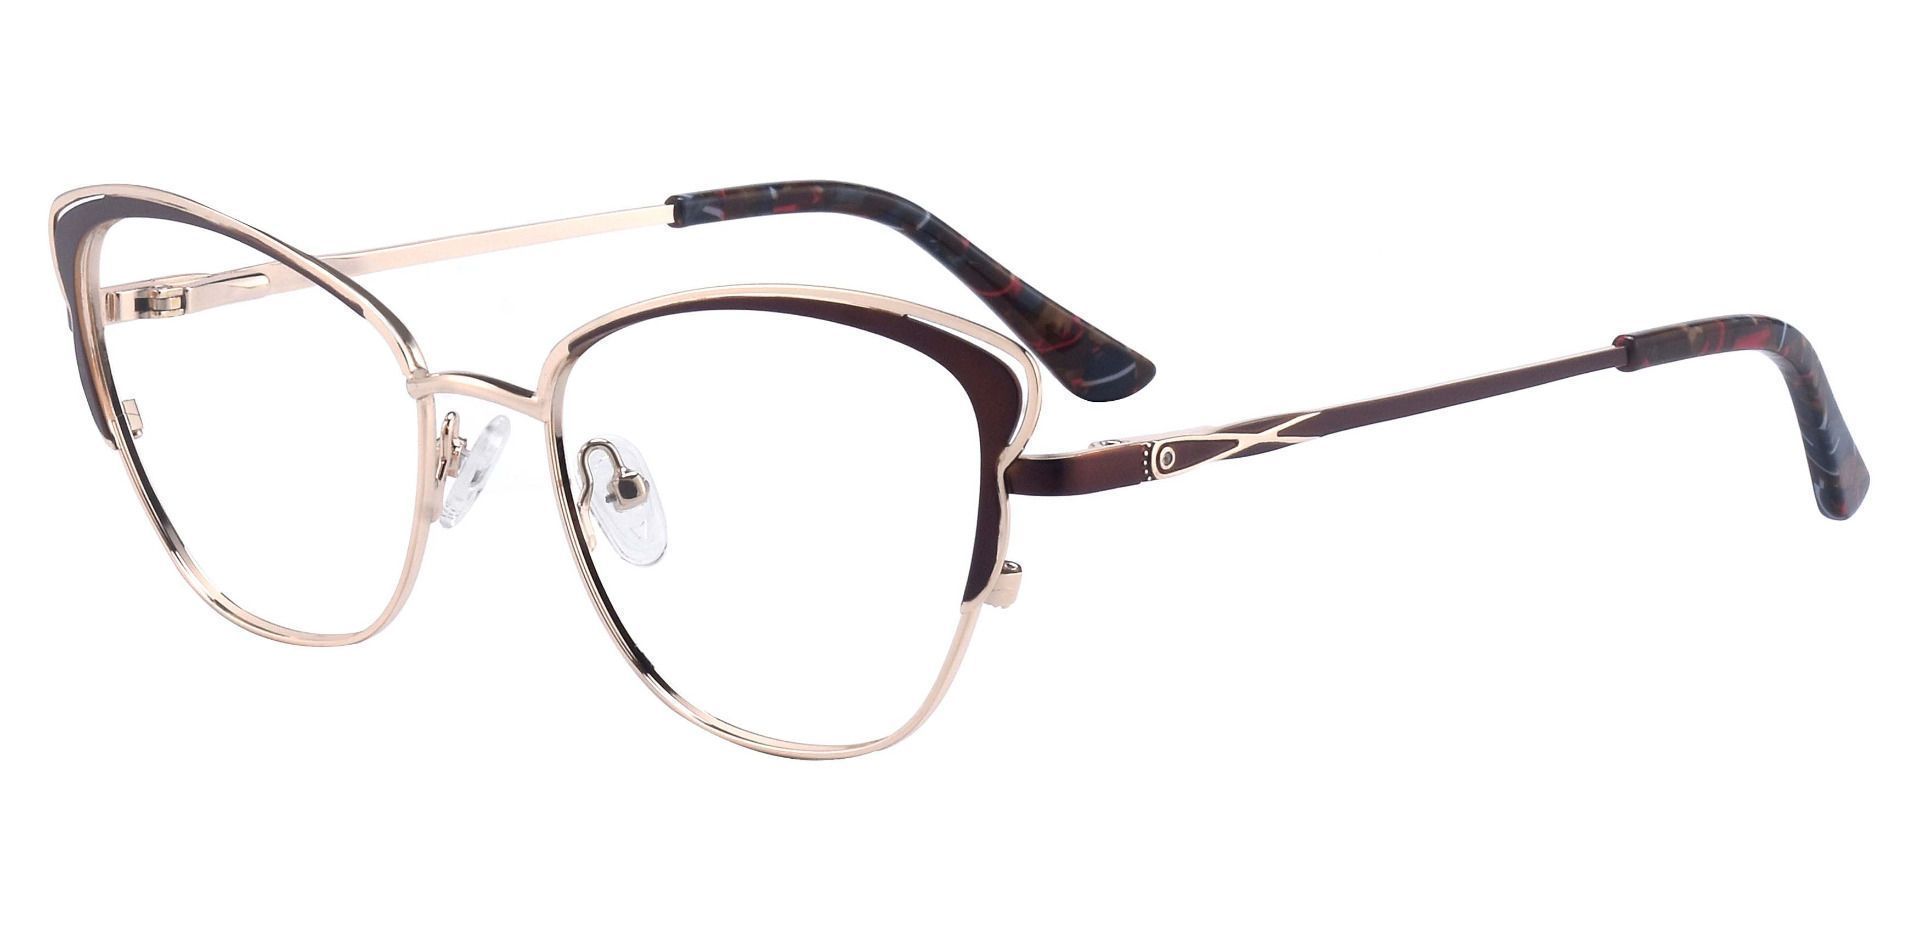 Dickinson Cat Eye Prescription Glasses - Brown | Women's Eyeglasses ...